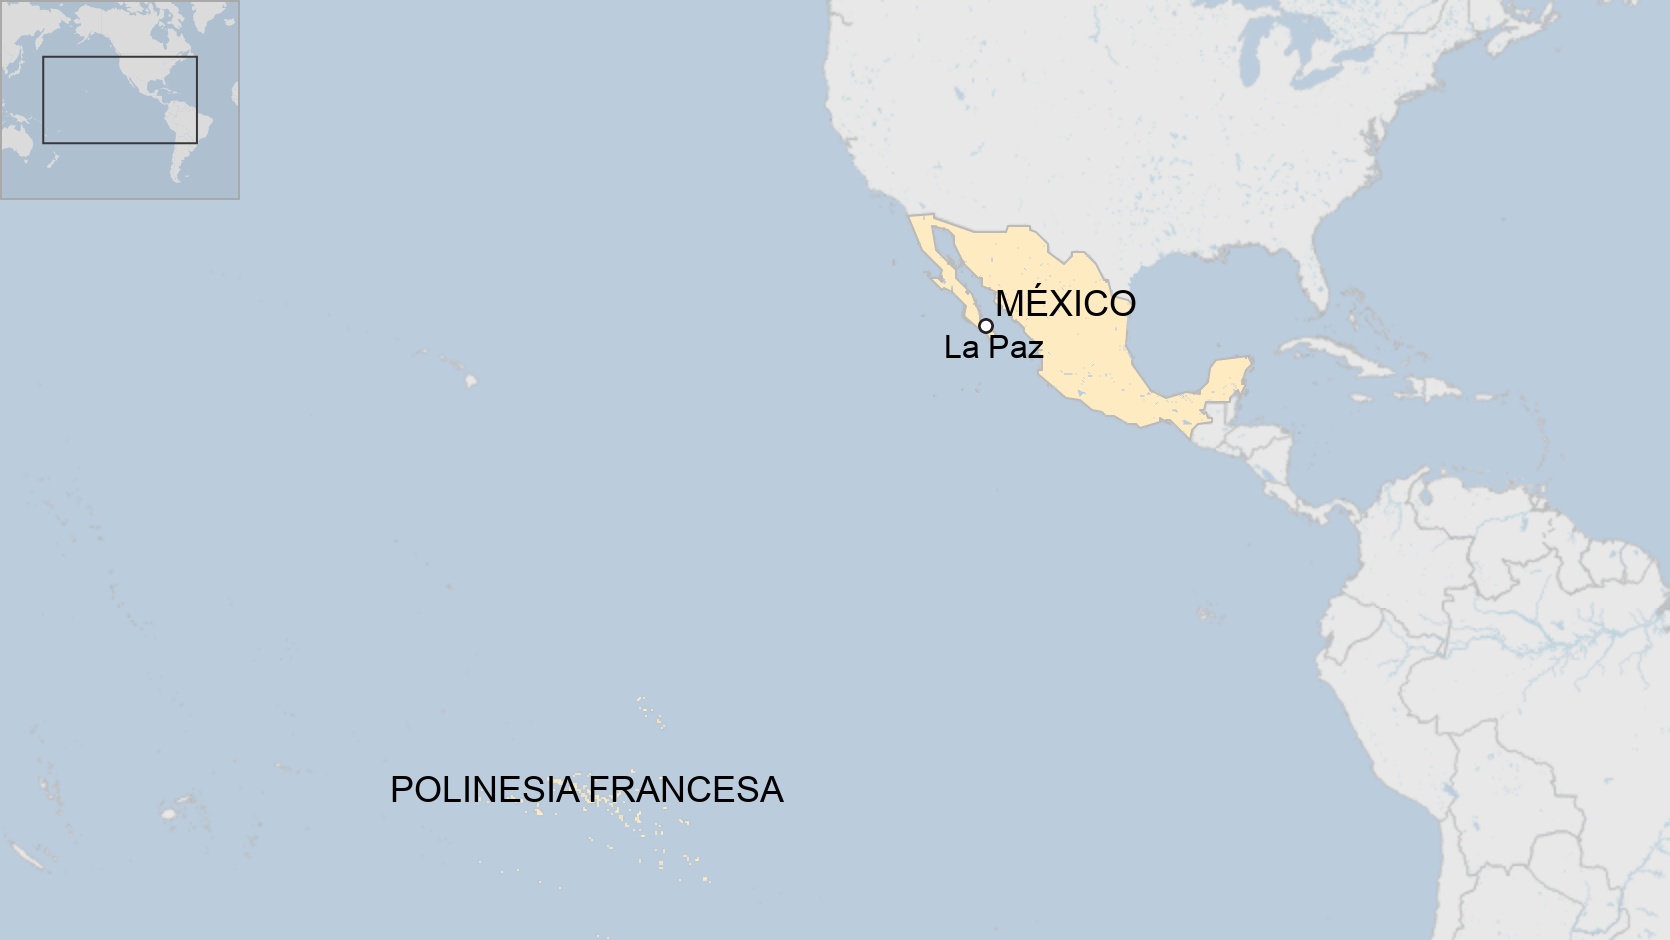 Mapa del océano Pacífico, entre México y la Polinesia Francesa